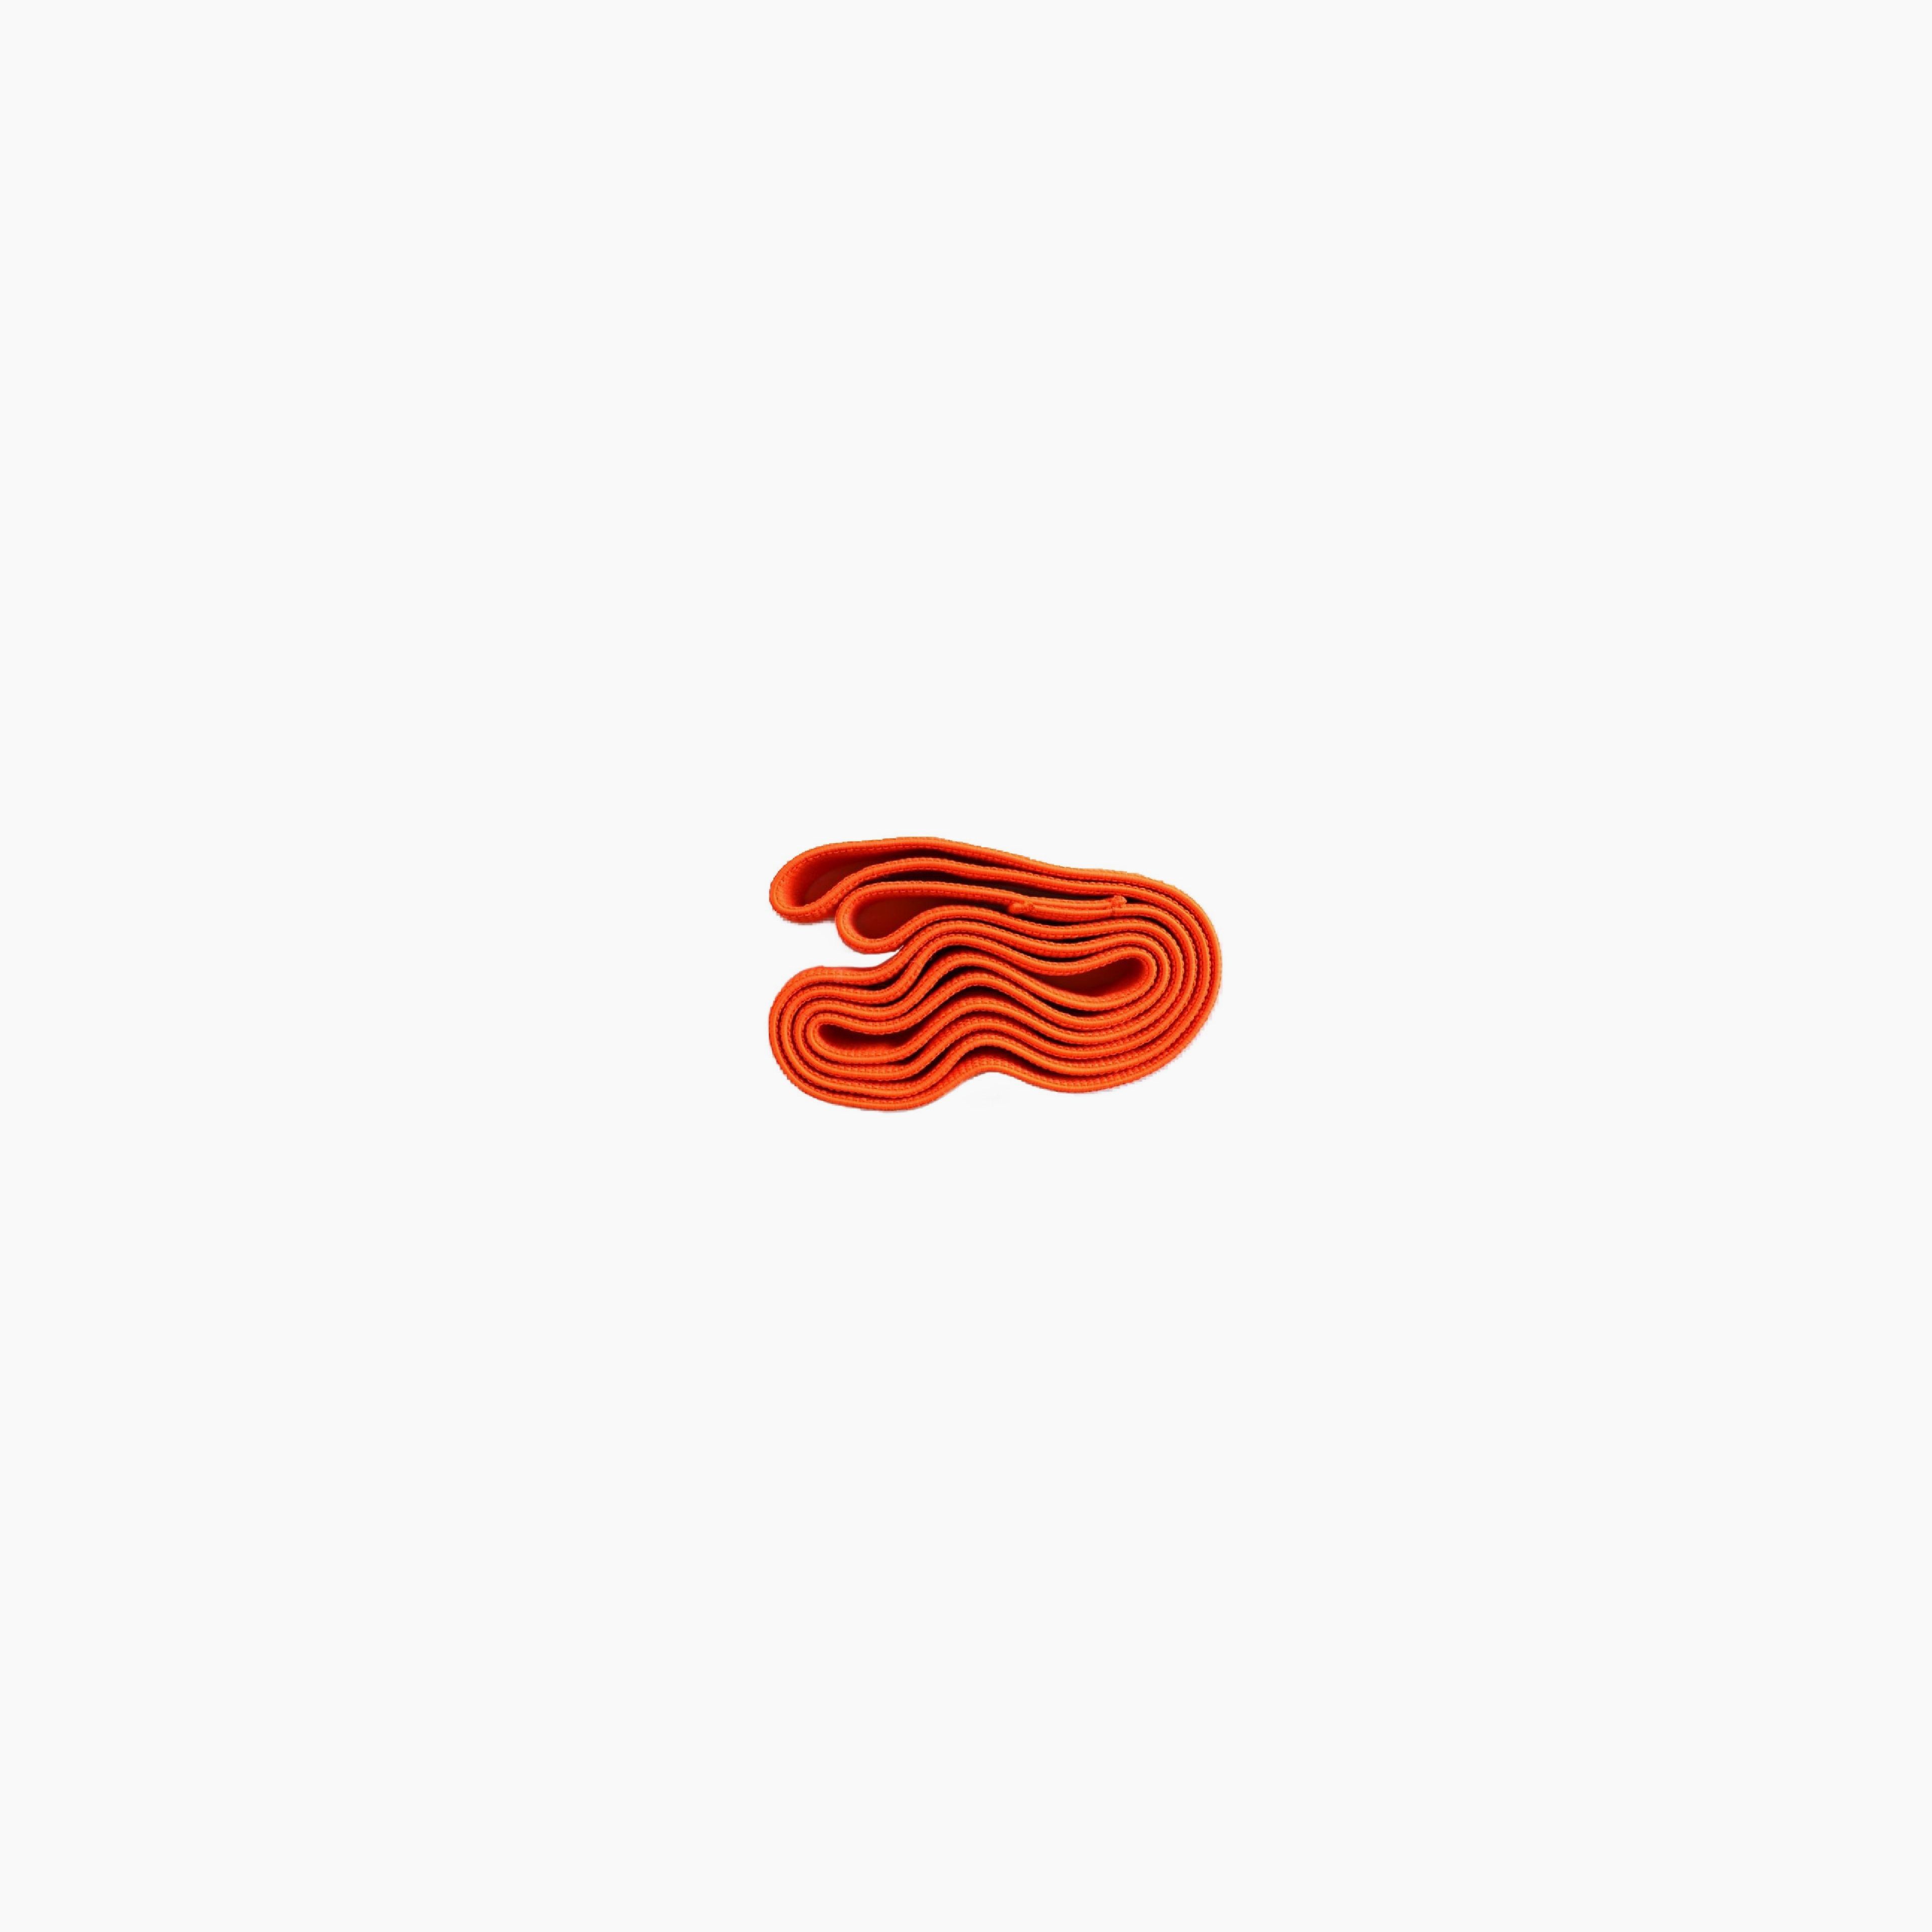 Neon Orange Long Loop Band / Heavy Resistance